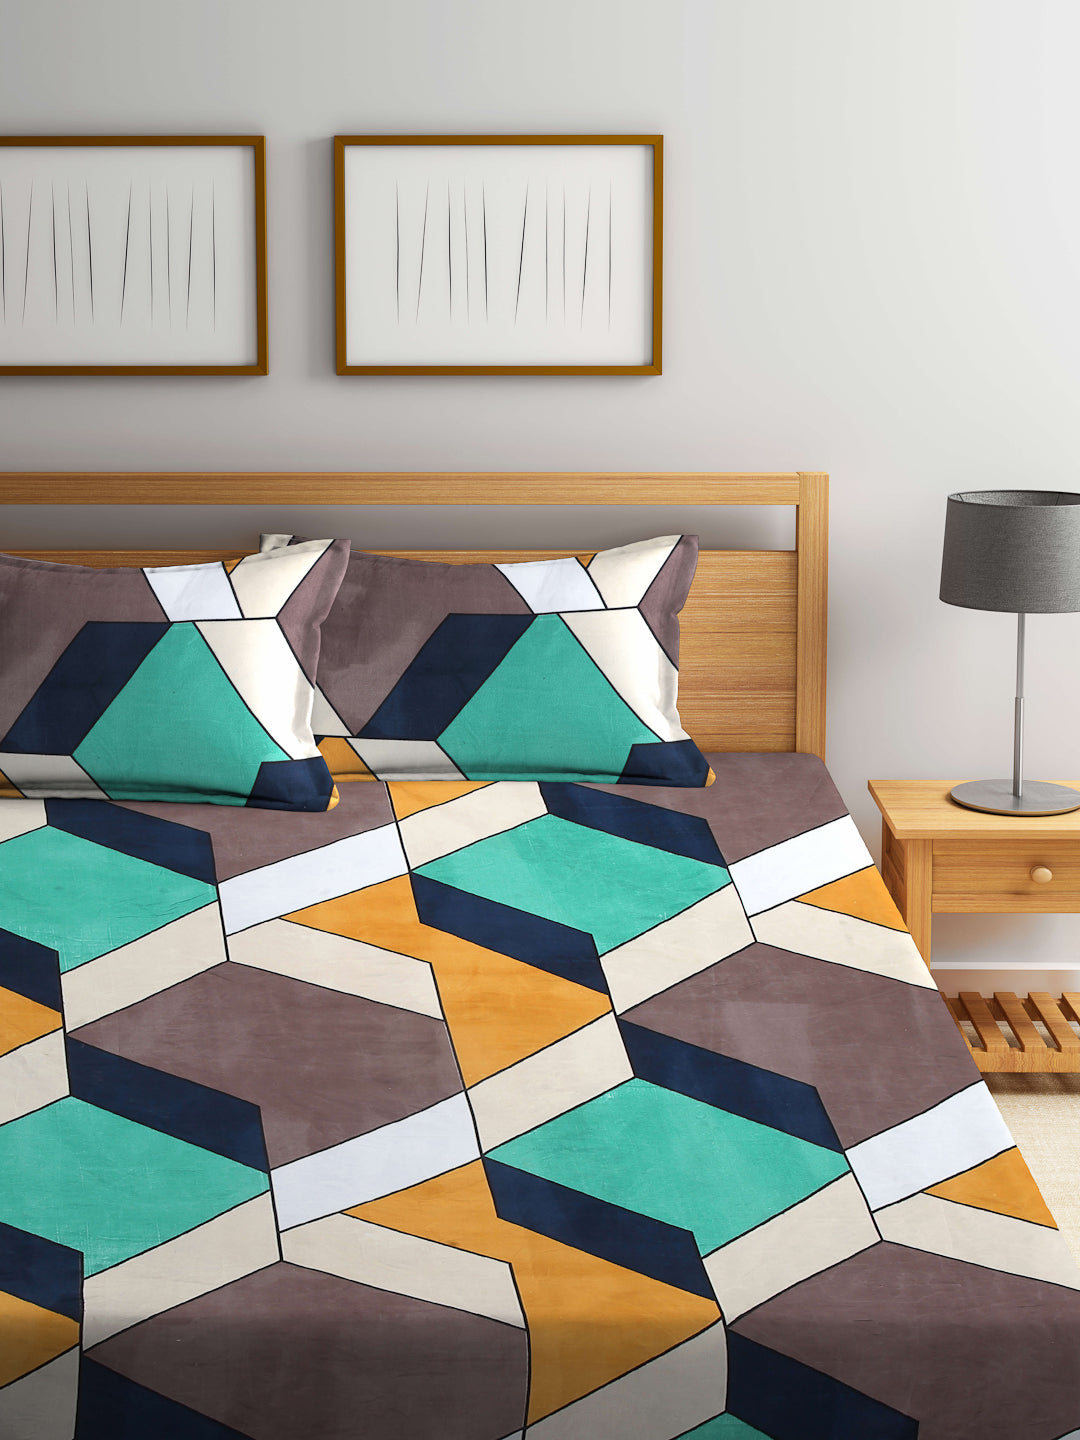 Arrabi Multi Geometric TC Cotton Blend Double Size Bedsheet with 2 Pillow Covers (250 x 215 cm)